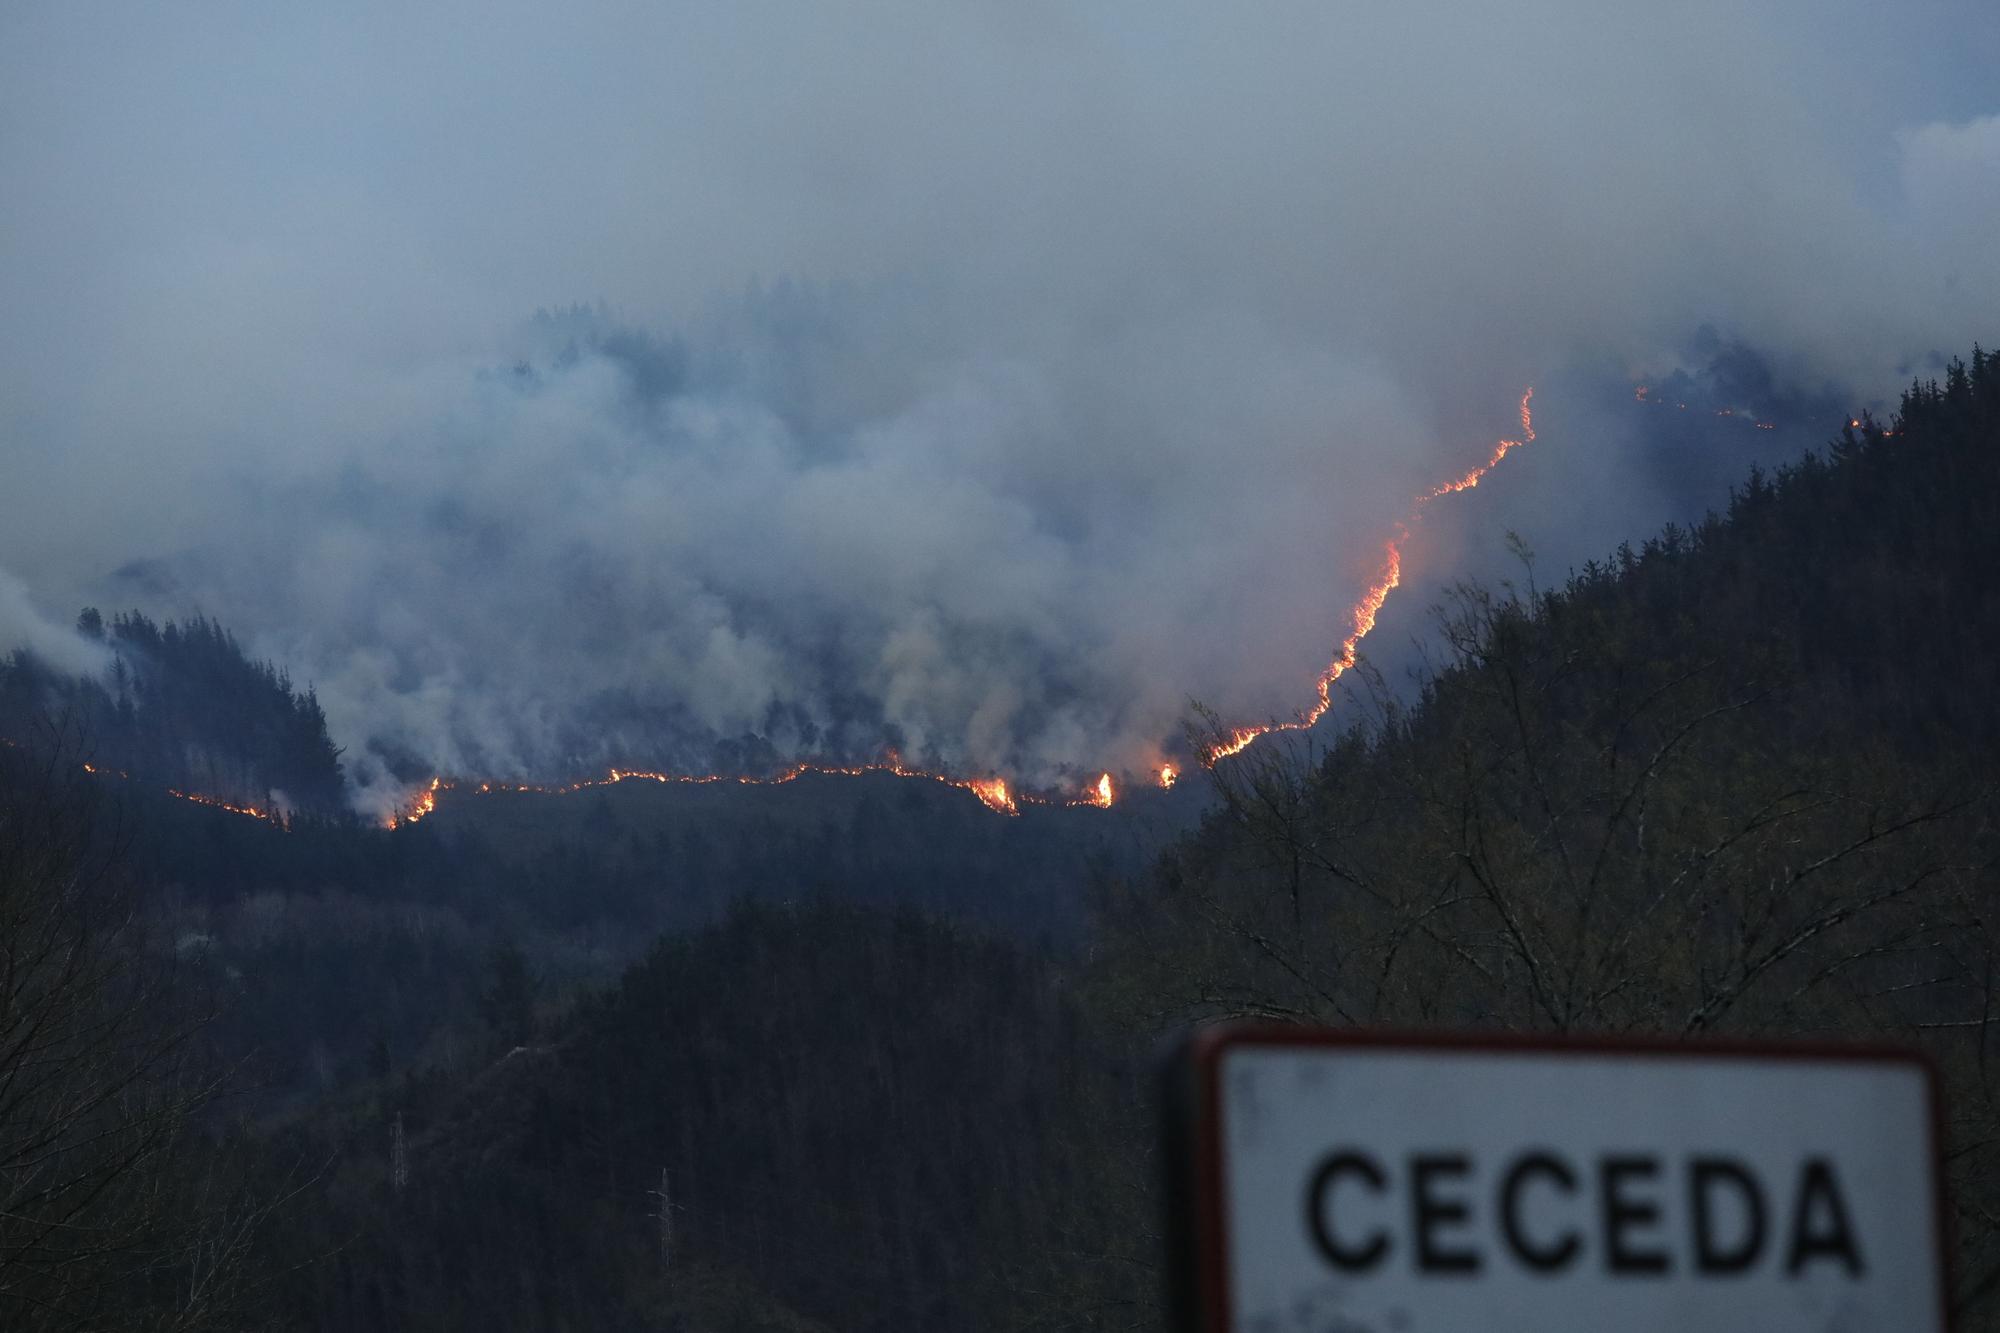 El incendio del monte de Carancos visto desde Ceceda